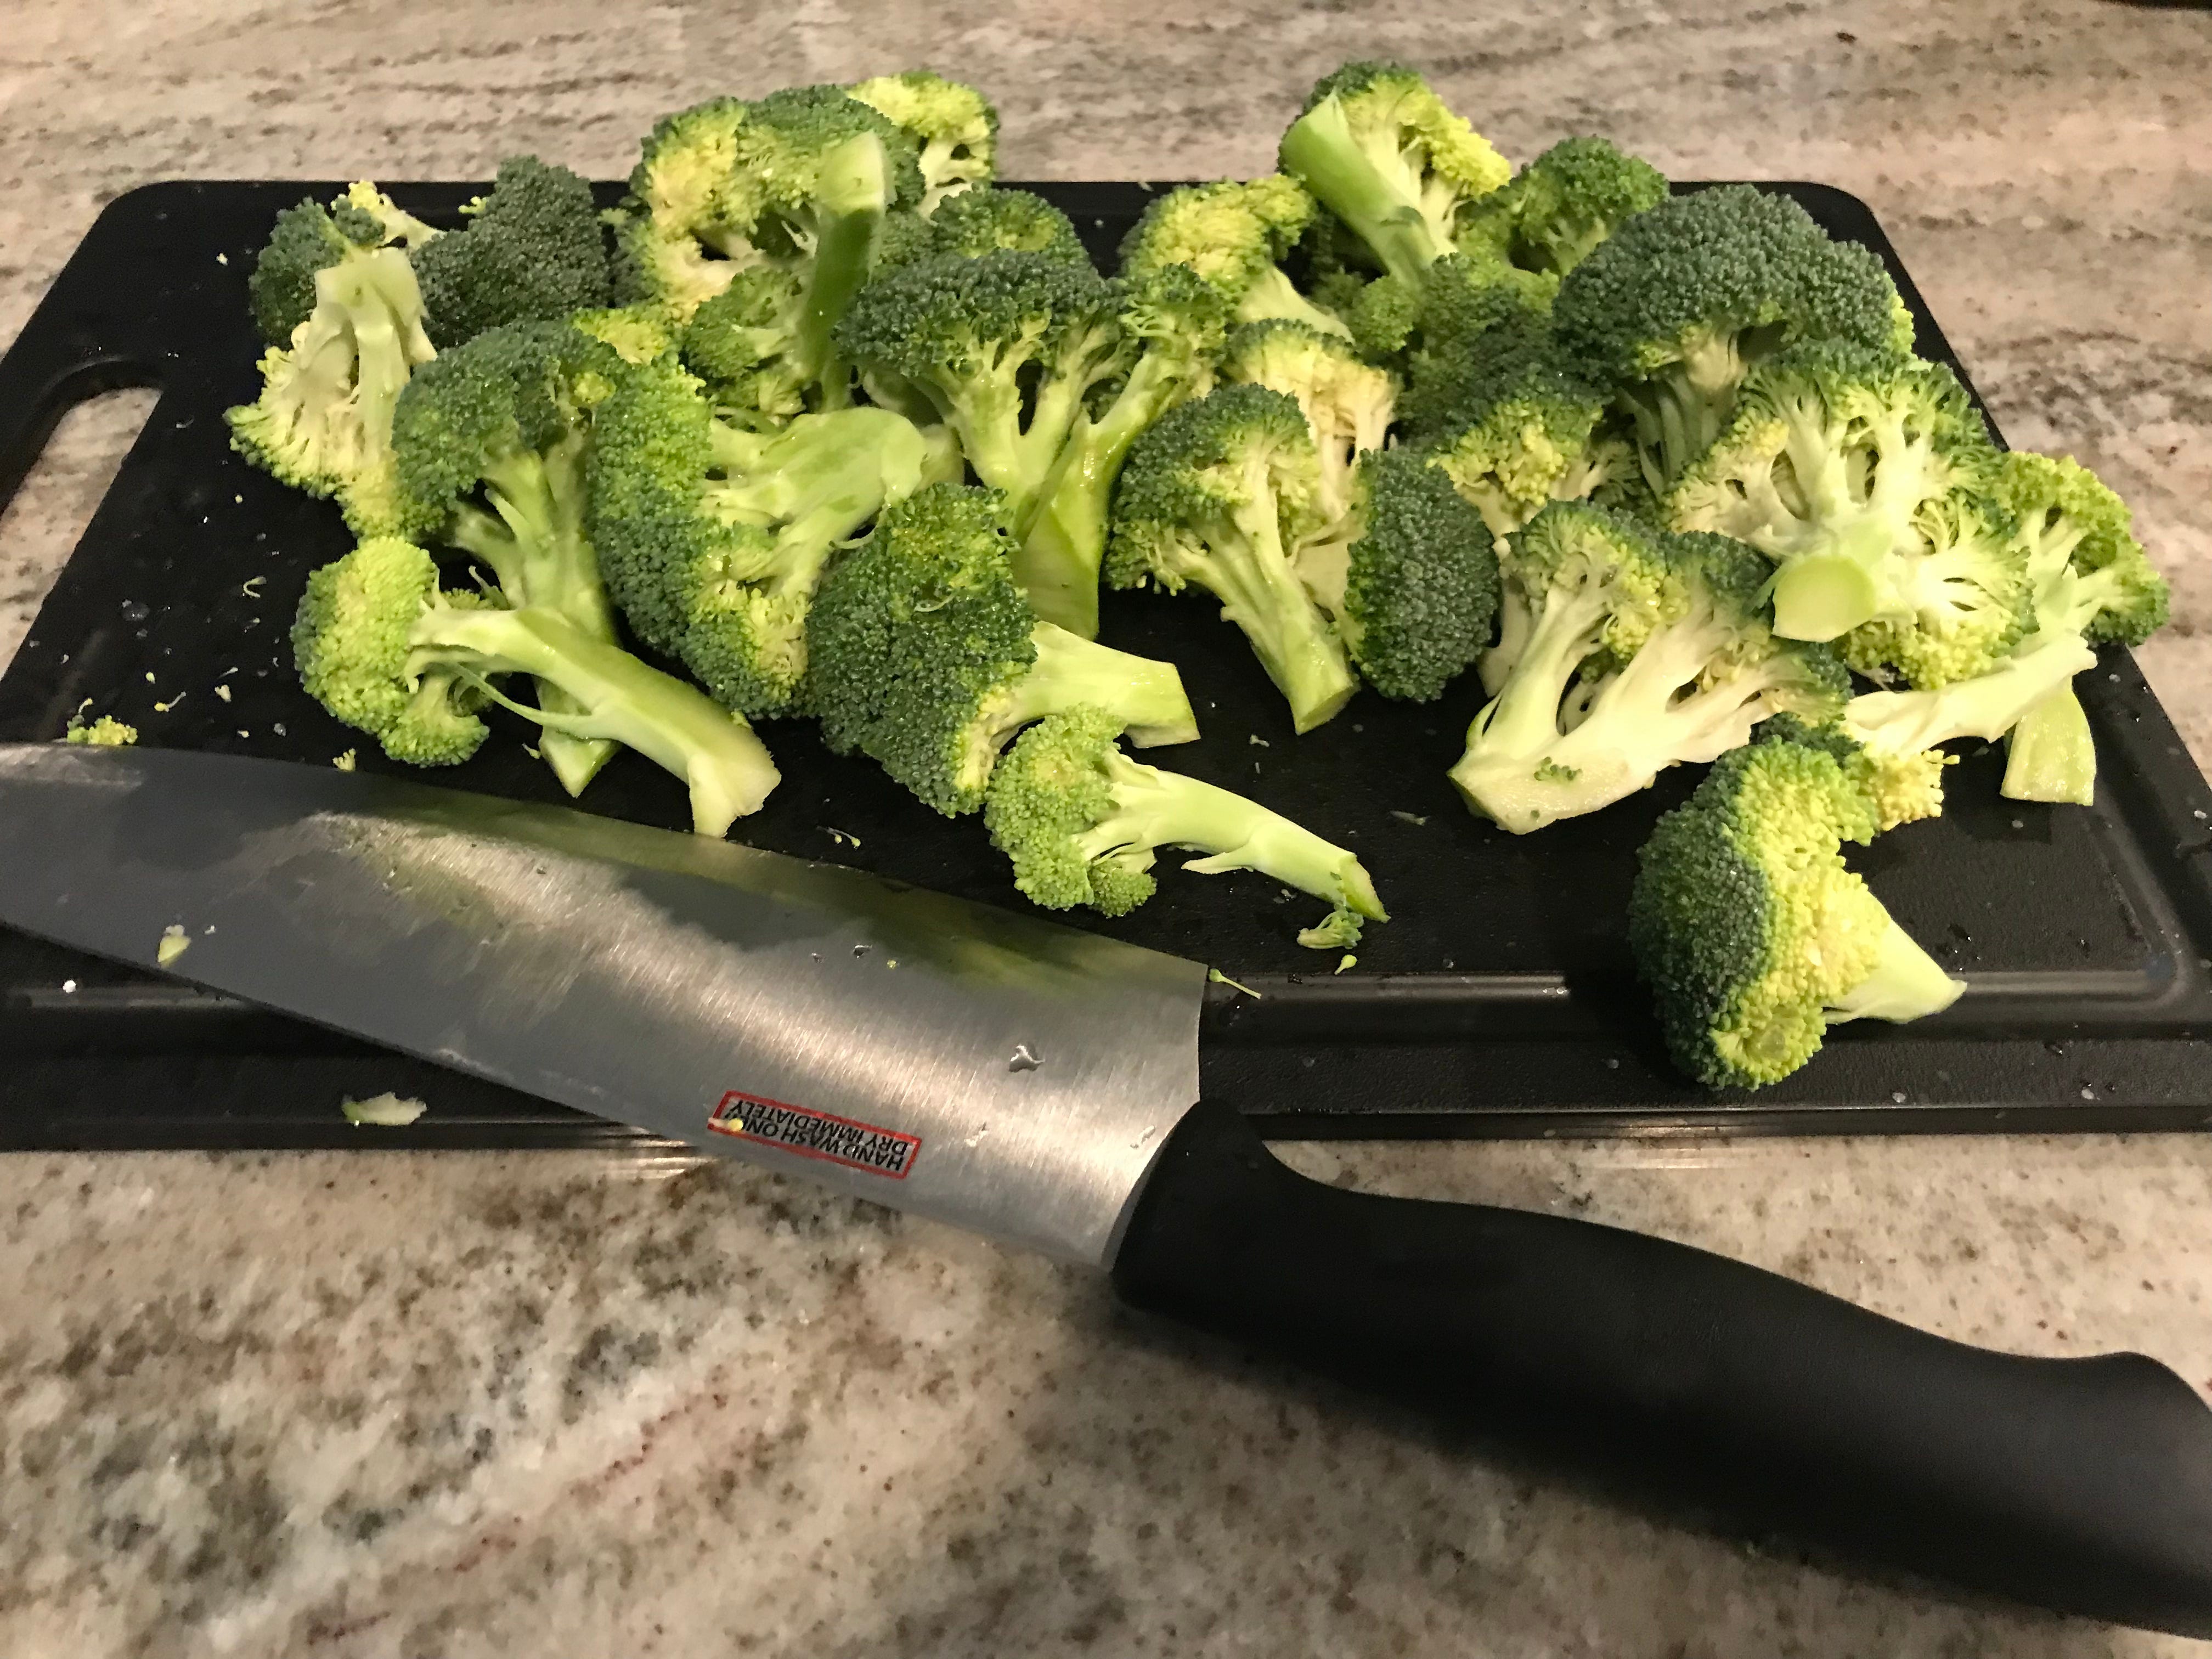 Brokkoli und Messer sitzen auf einem Schneidebrett